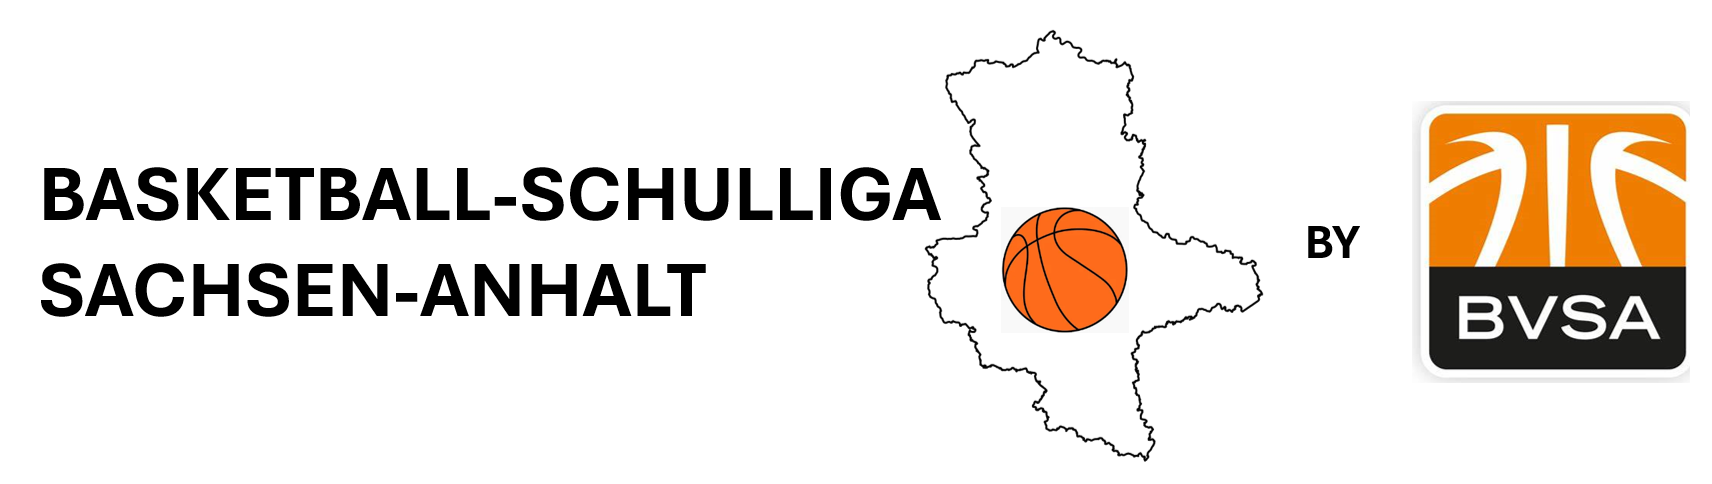 Basketball-Schulliga Sachsen-Anhalt